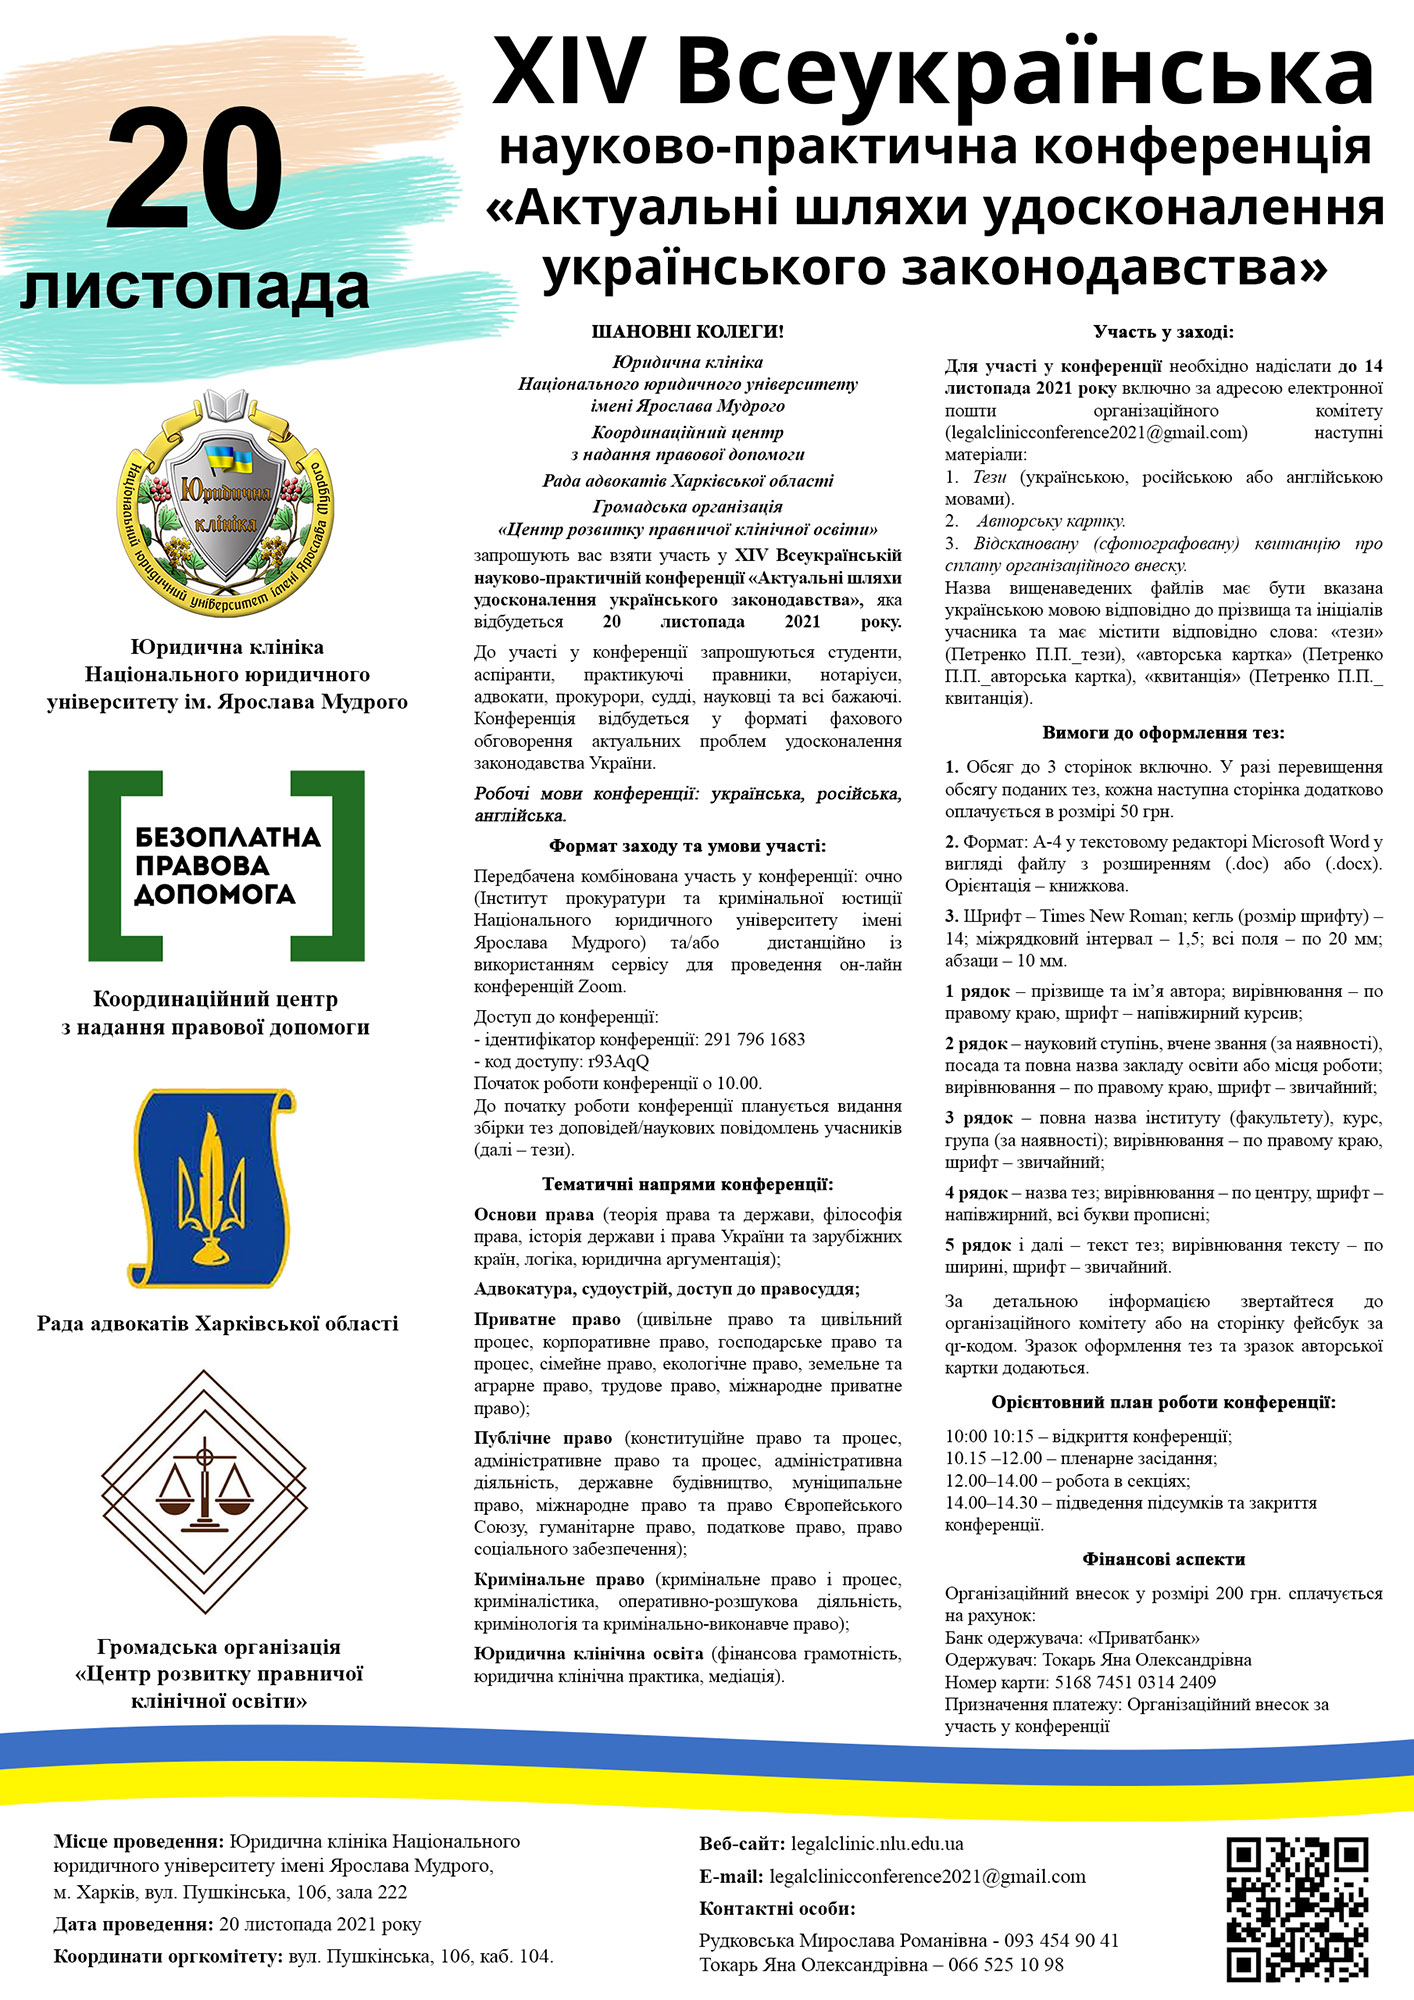 ХІV Всеукраїнська науково-практична конференція «Актуальні шляхи удосконалення українського законодавства»